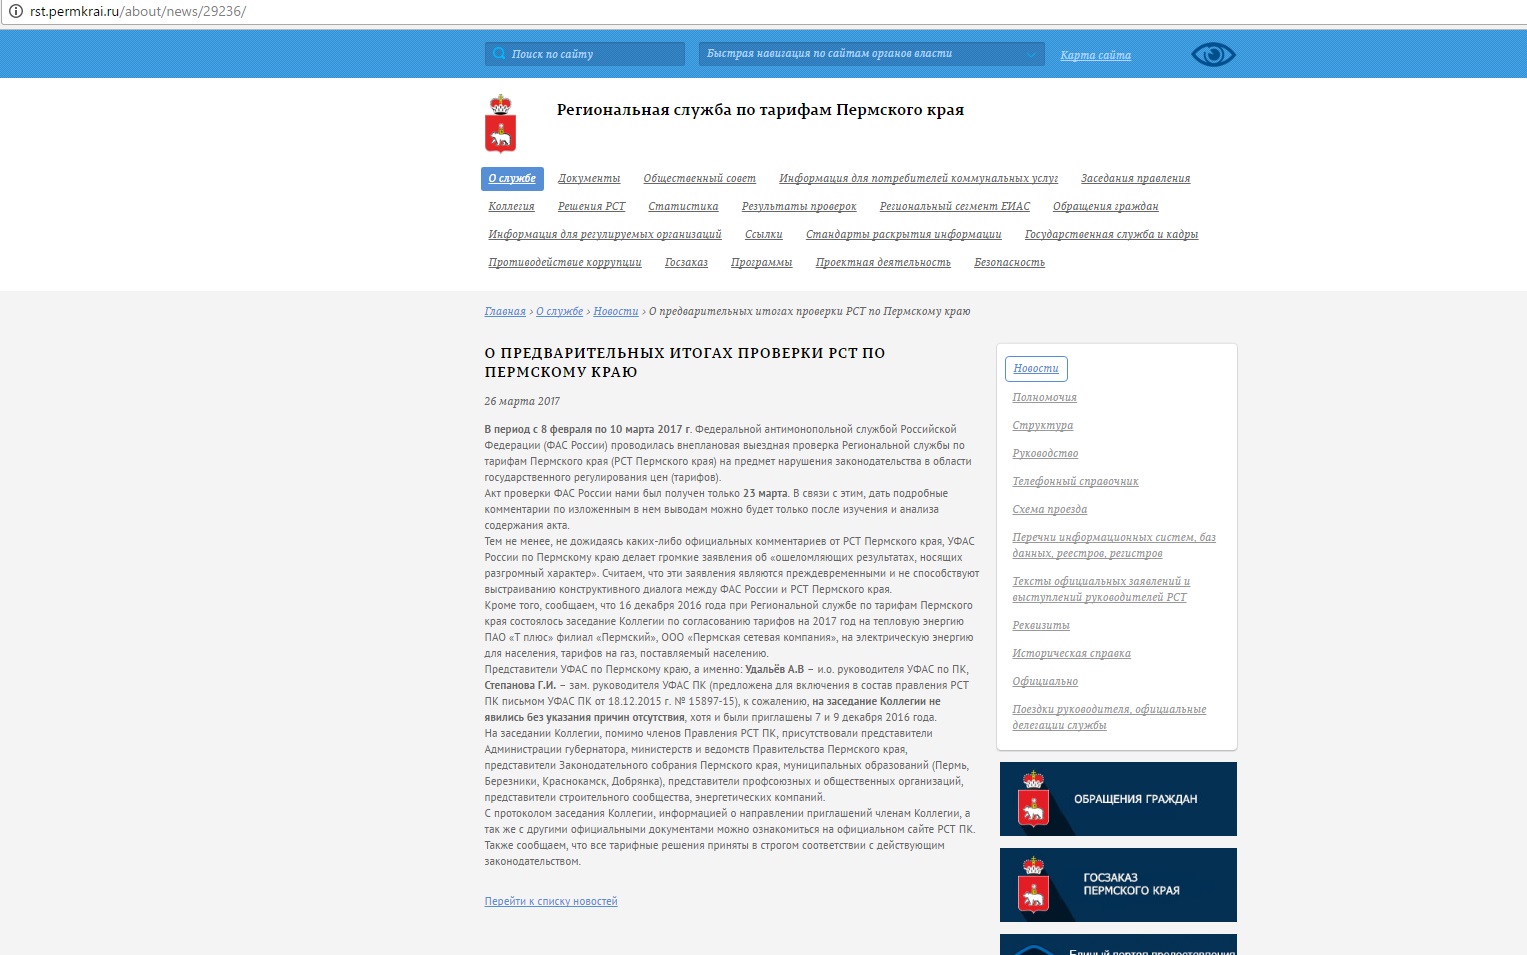 Заявление РСТ Пермского края размещено на сайте